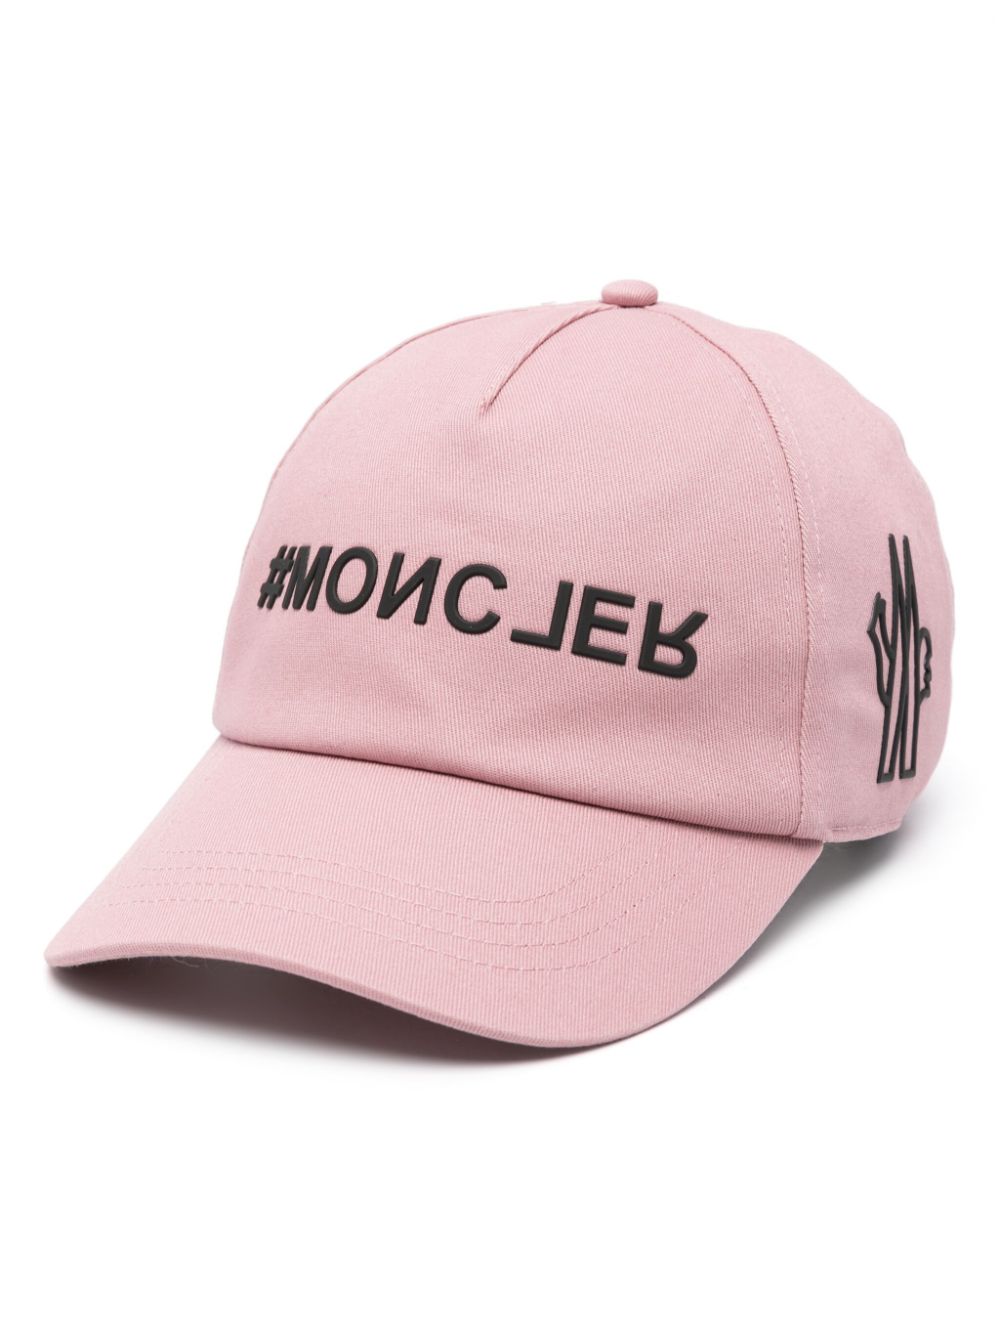 Cappello rosa in cotone con applicazione logo<br><br><br>